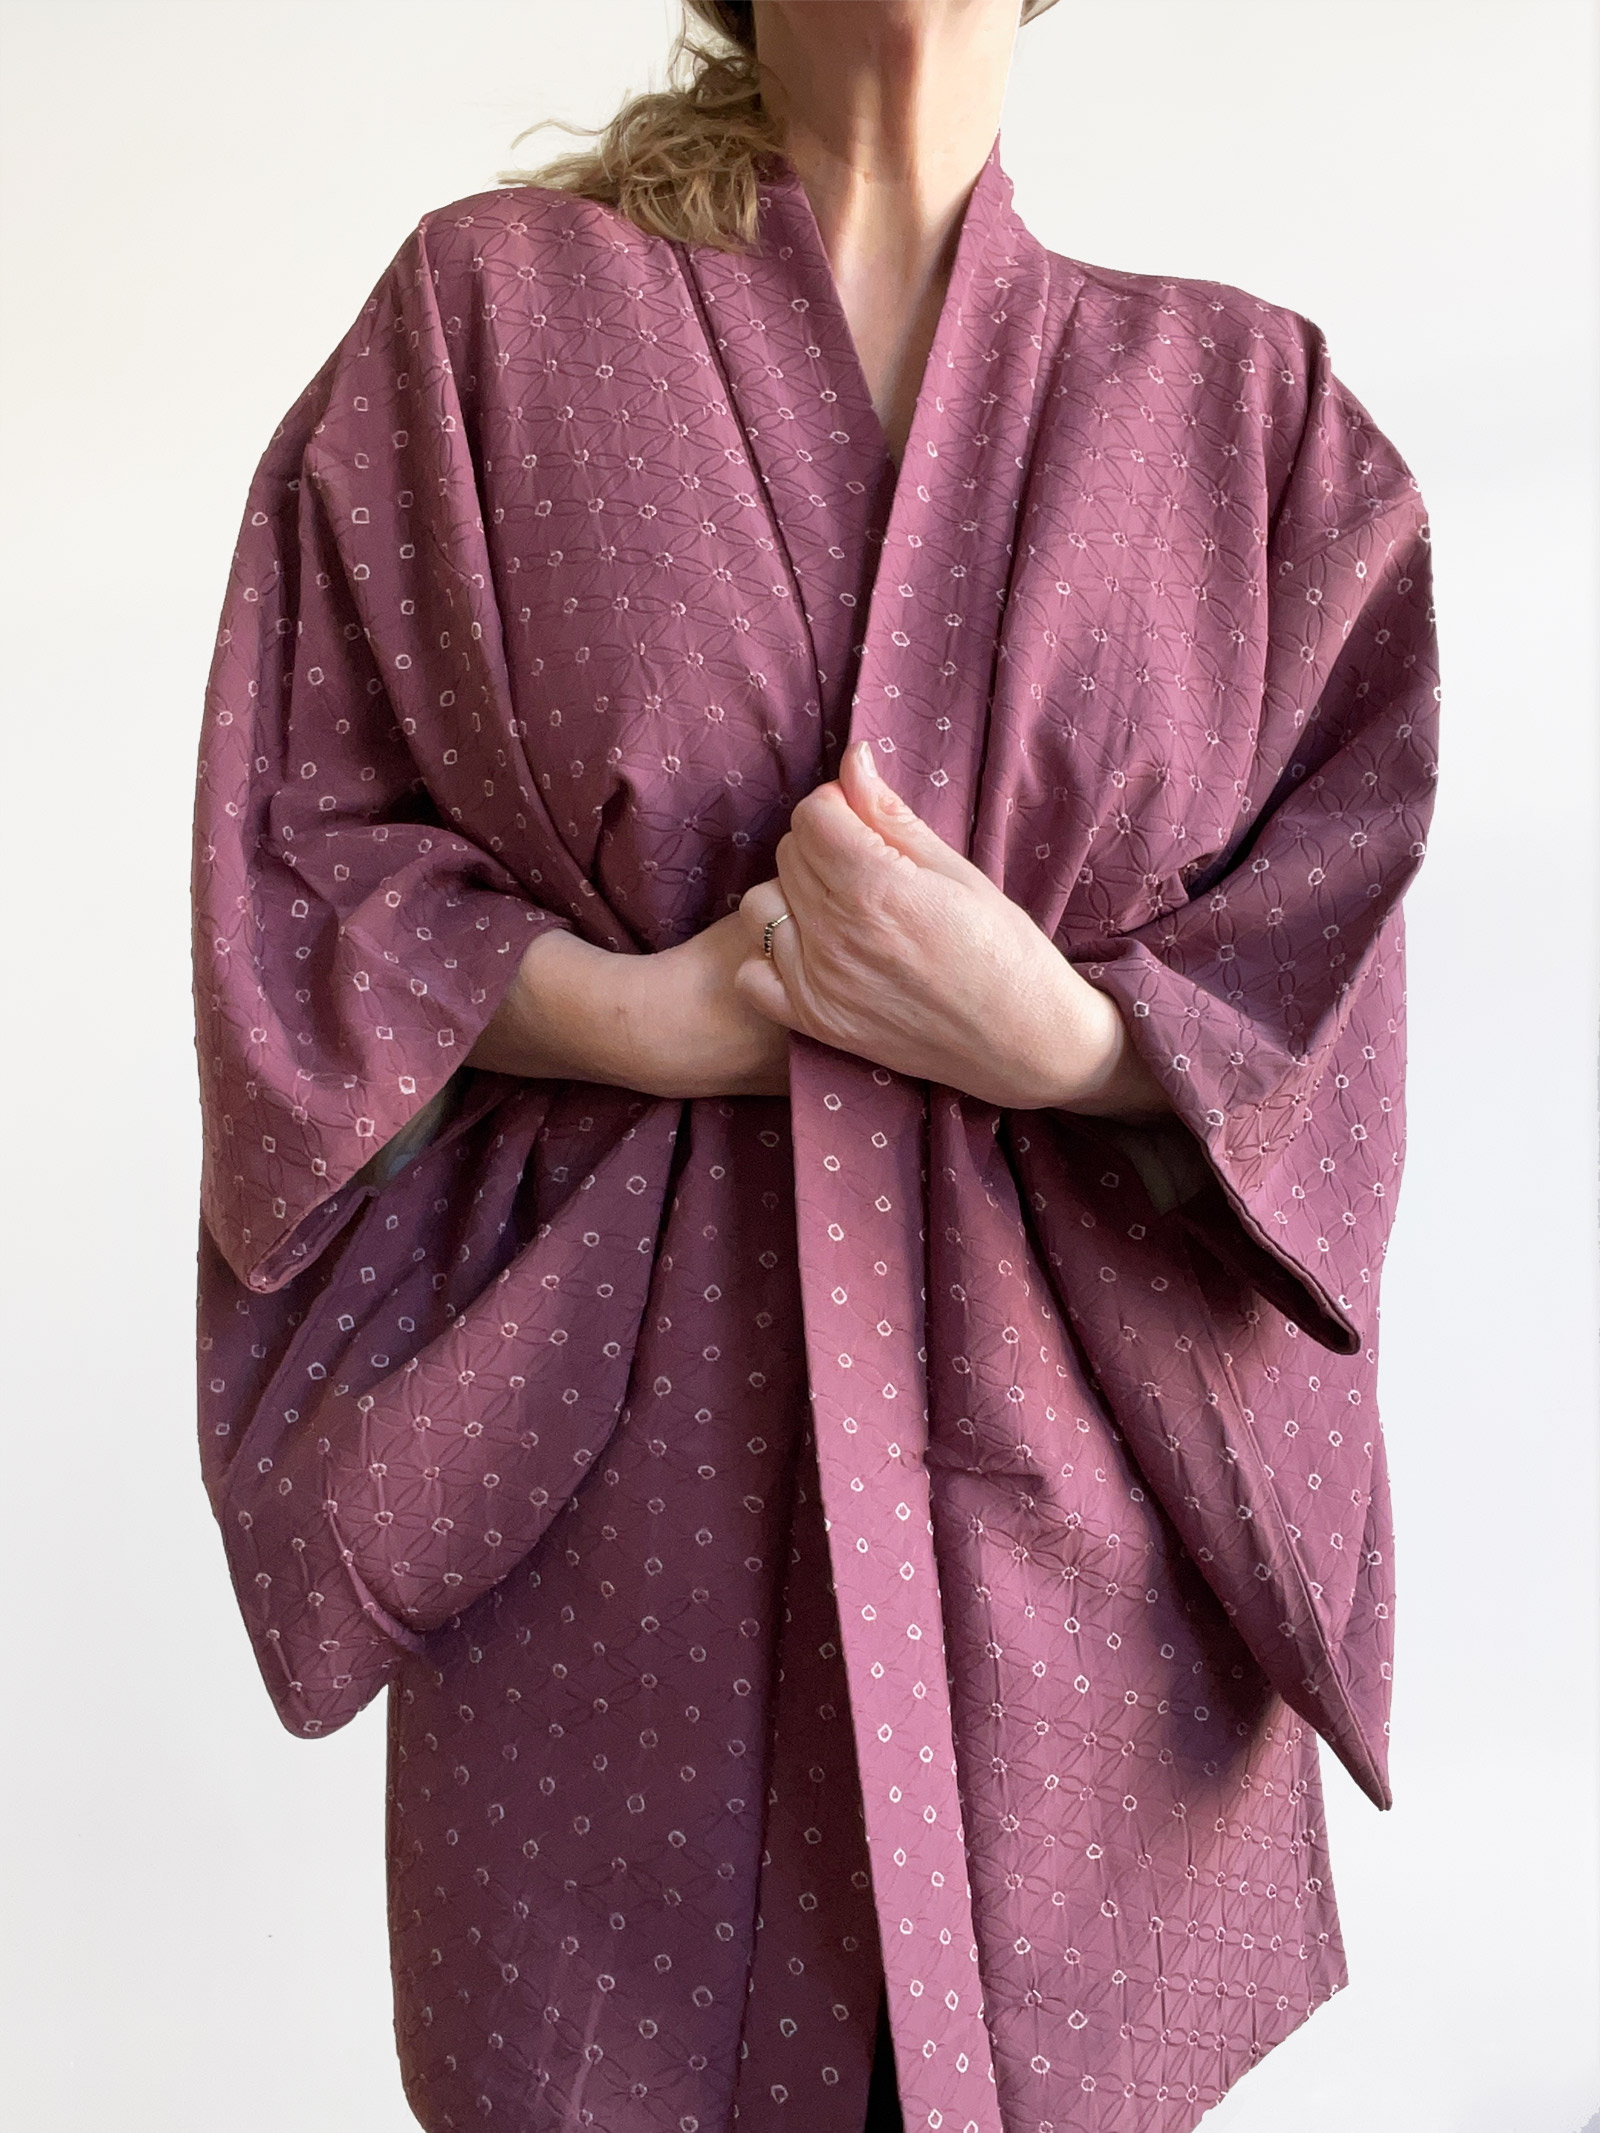 Shizu – patterned silk Kimono jacket (Haori) in plum color